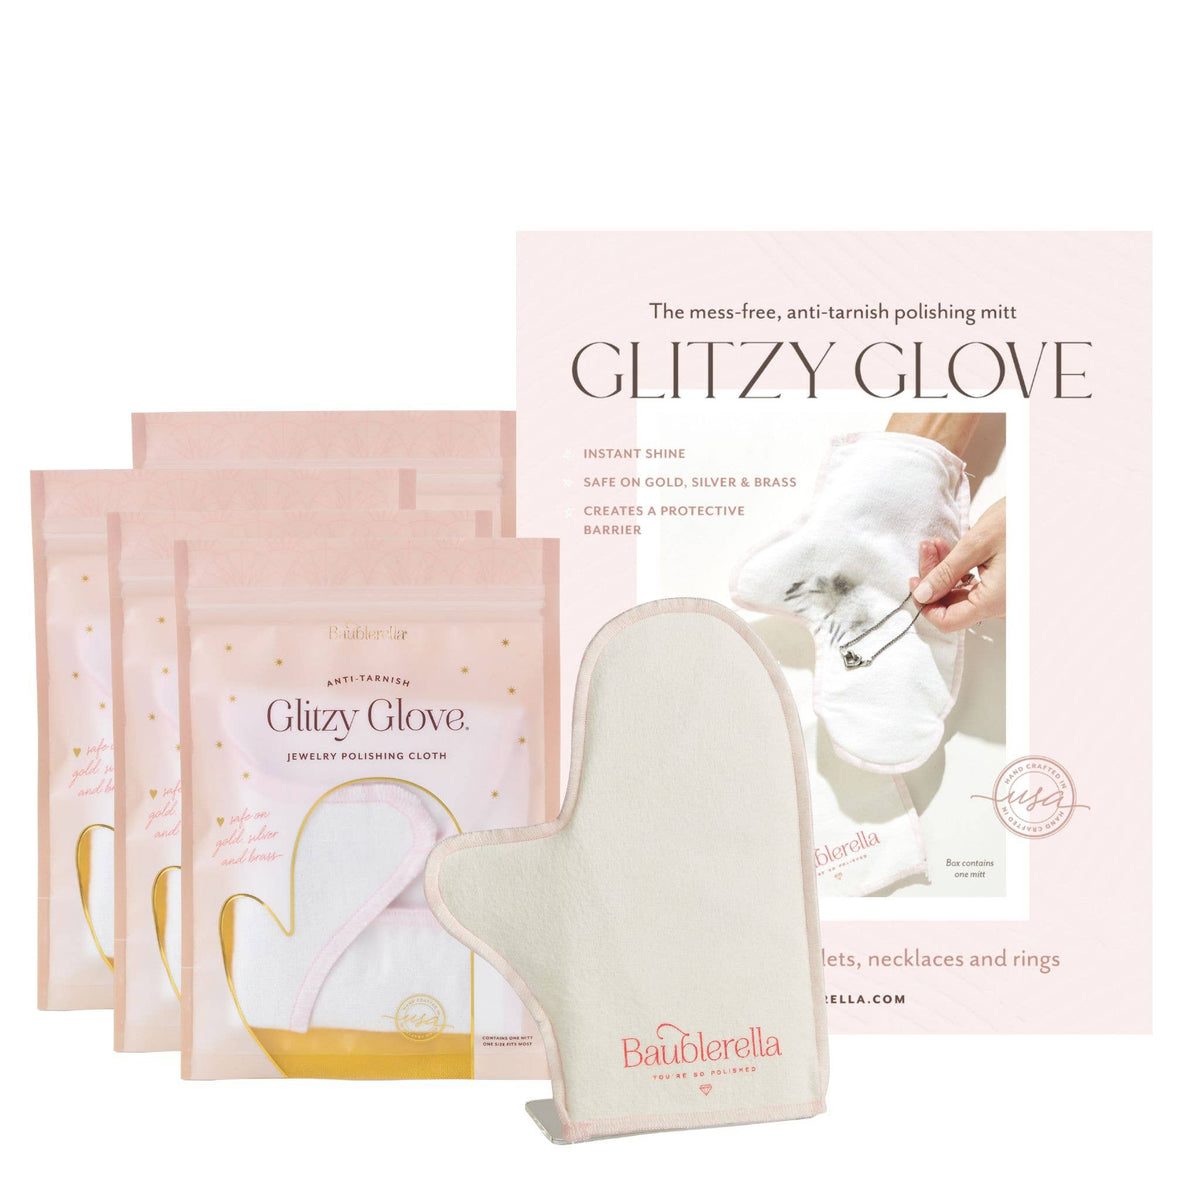 Glitzy glove